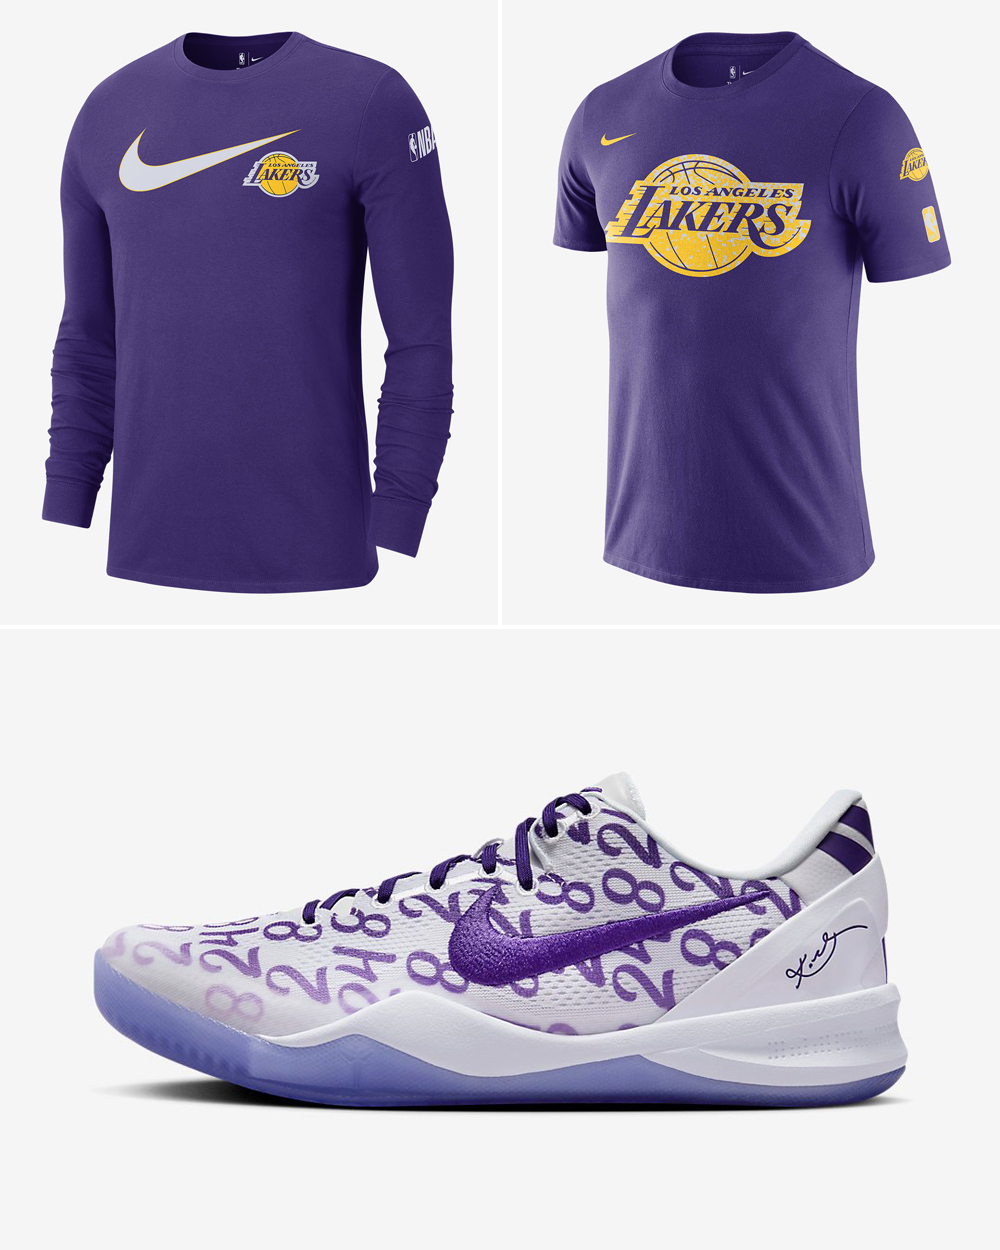 Nike-Kobe-8-Protro-Court-Purple-Lakers-Shirts